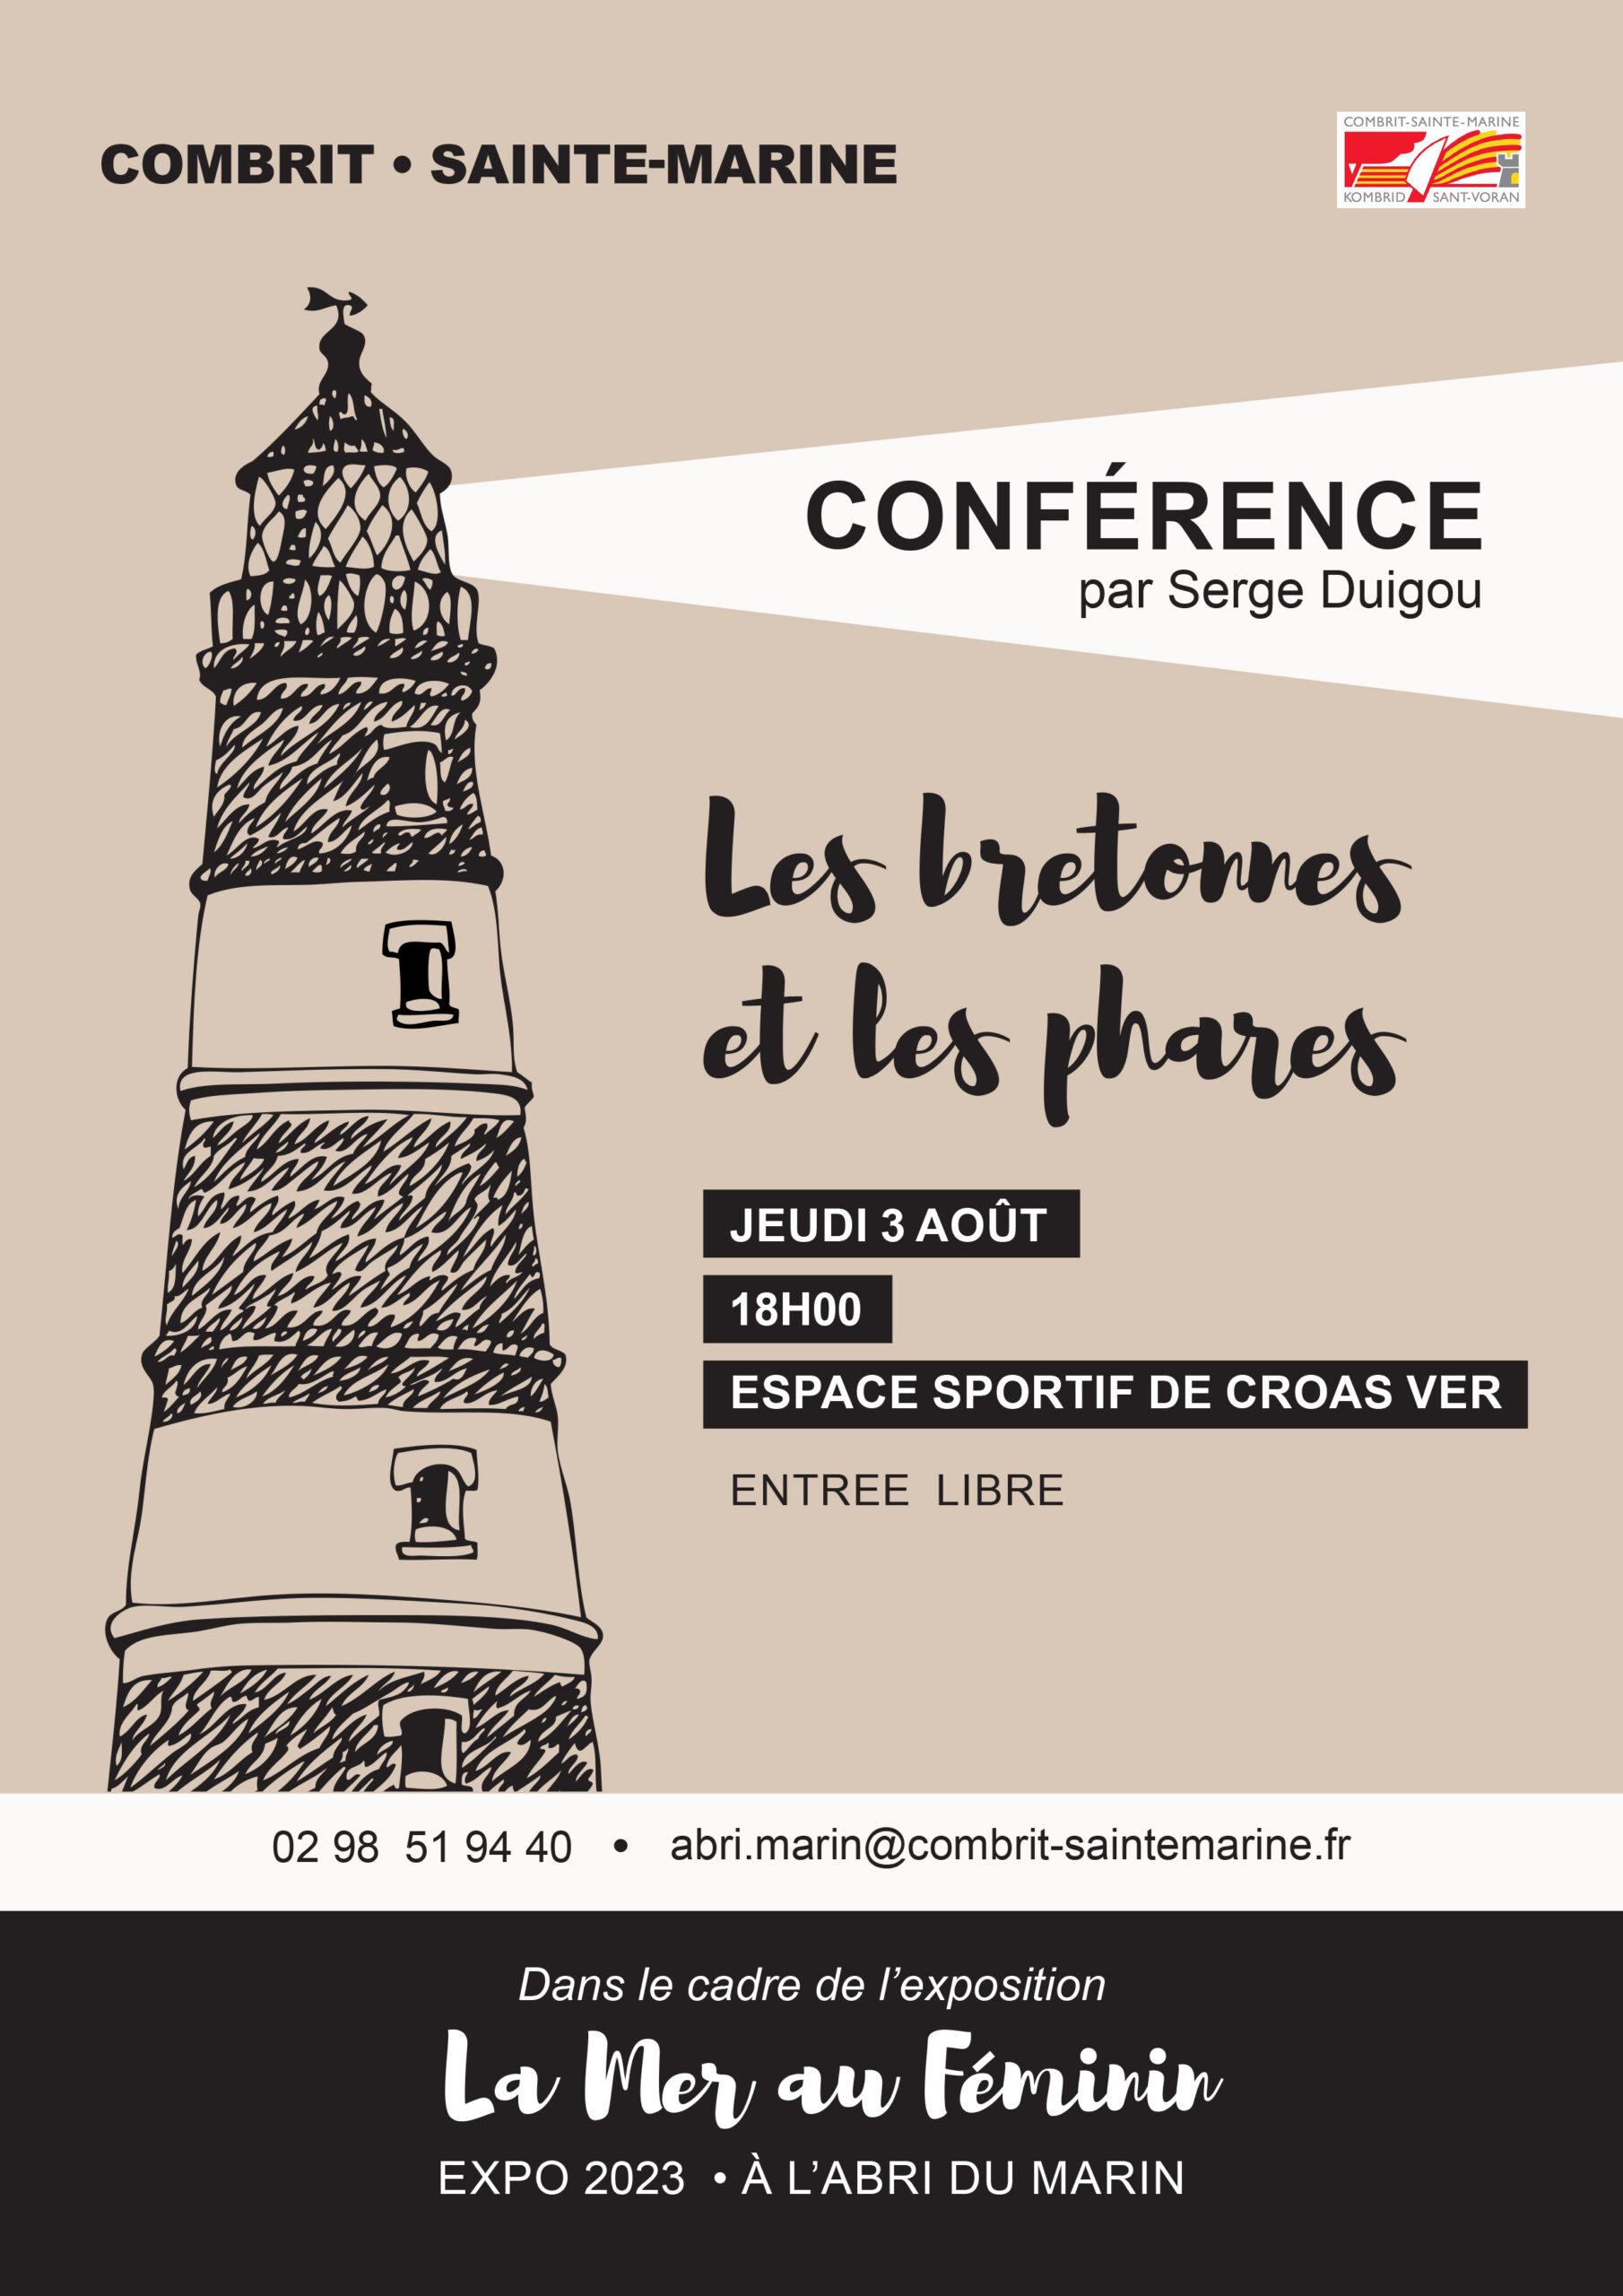 Conférence "Les bretonnes et les phares"